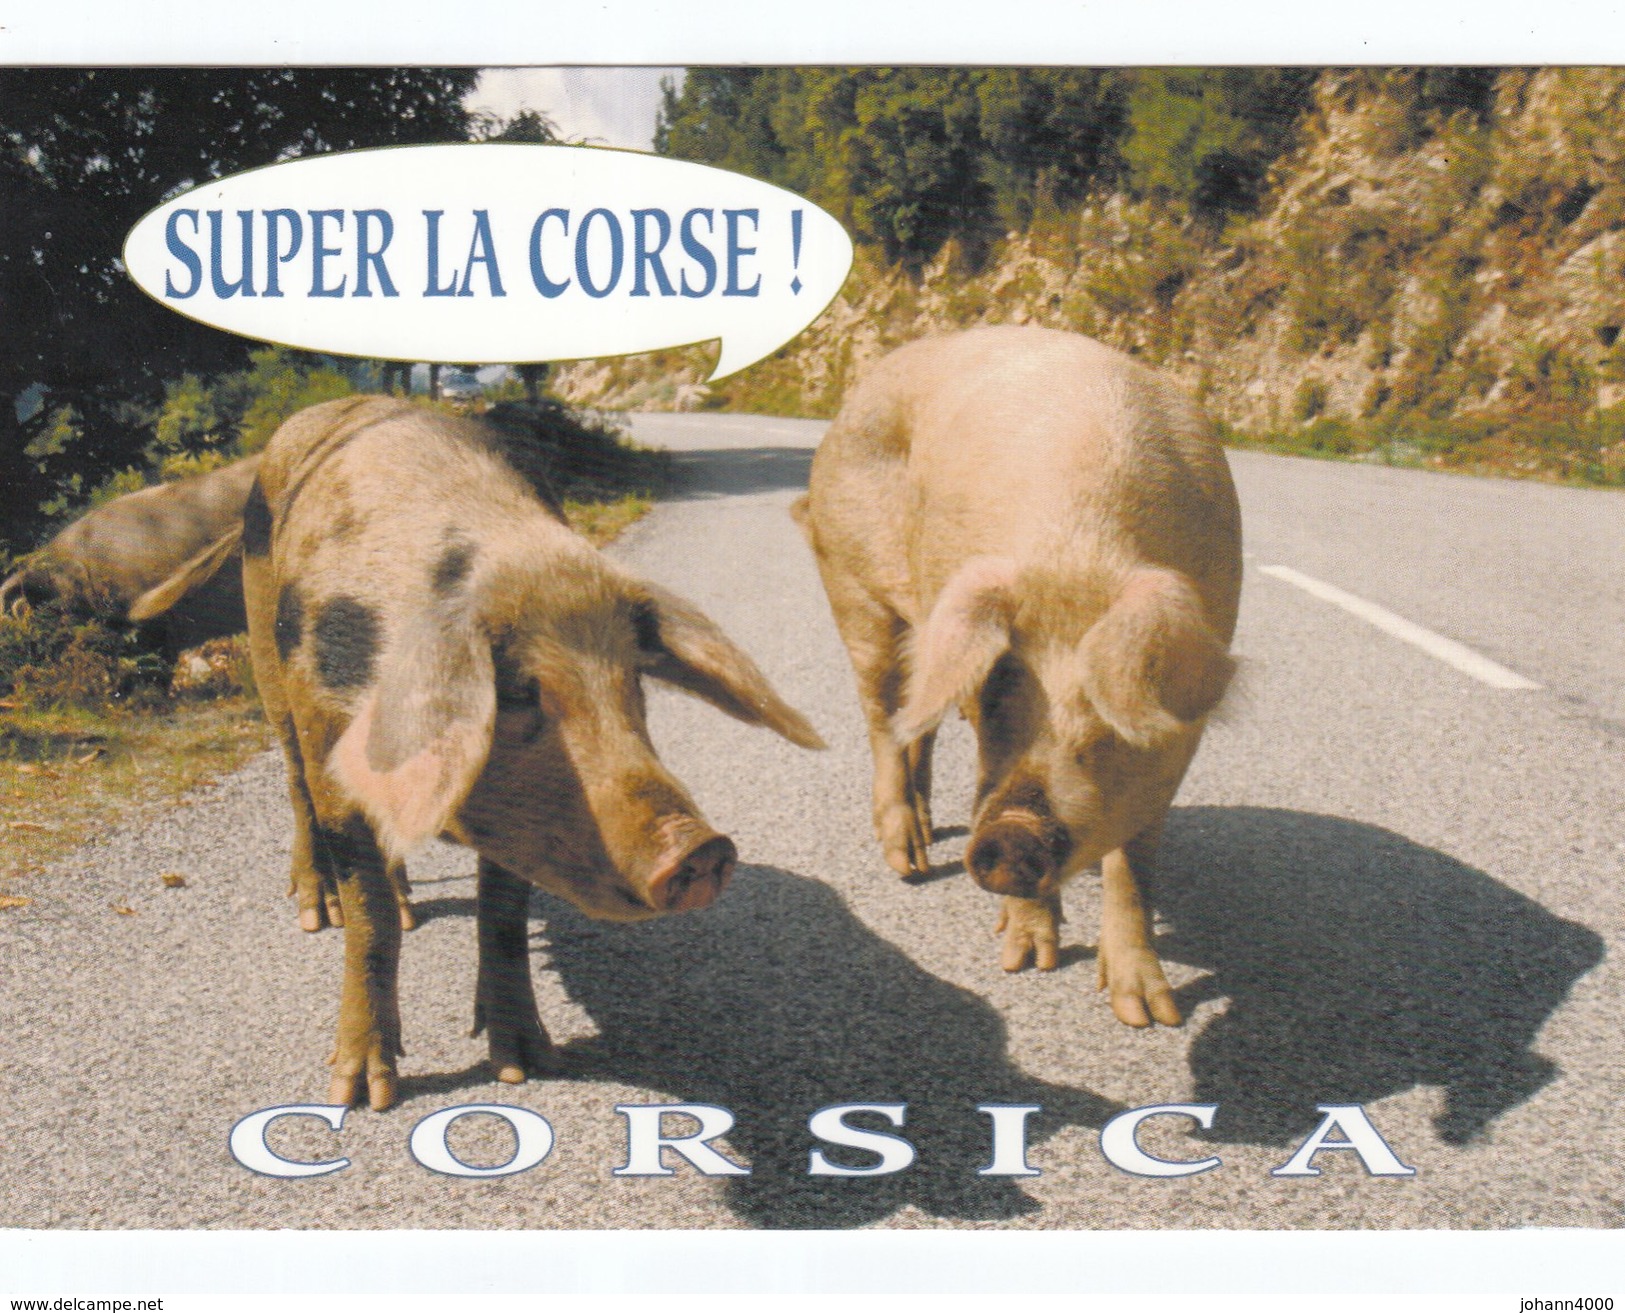 Corsica   Super La Corse - Humor